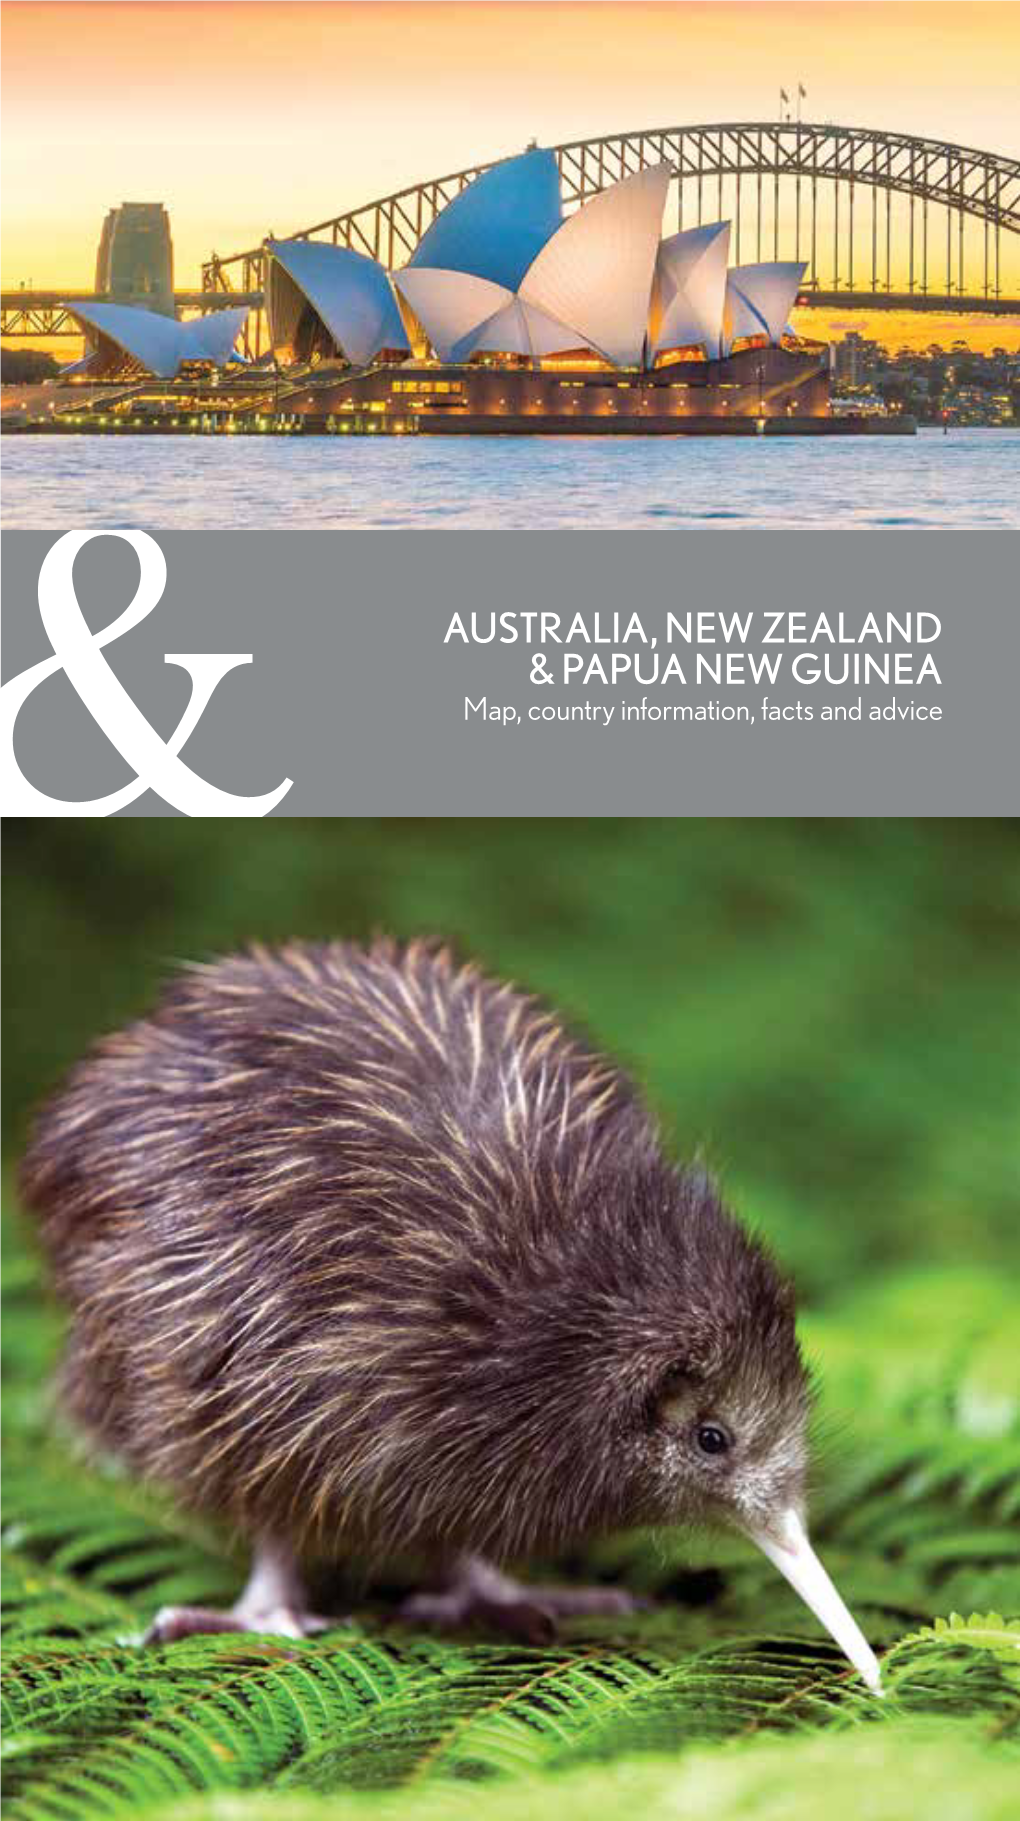 Australia, New Zealand & Papua New Guinea